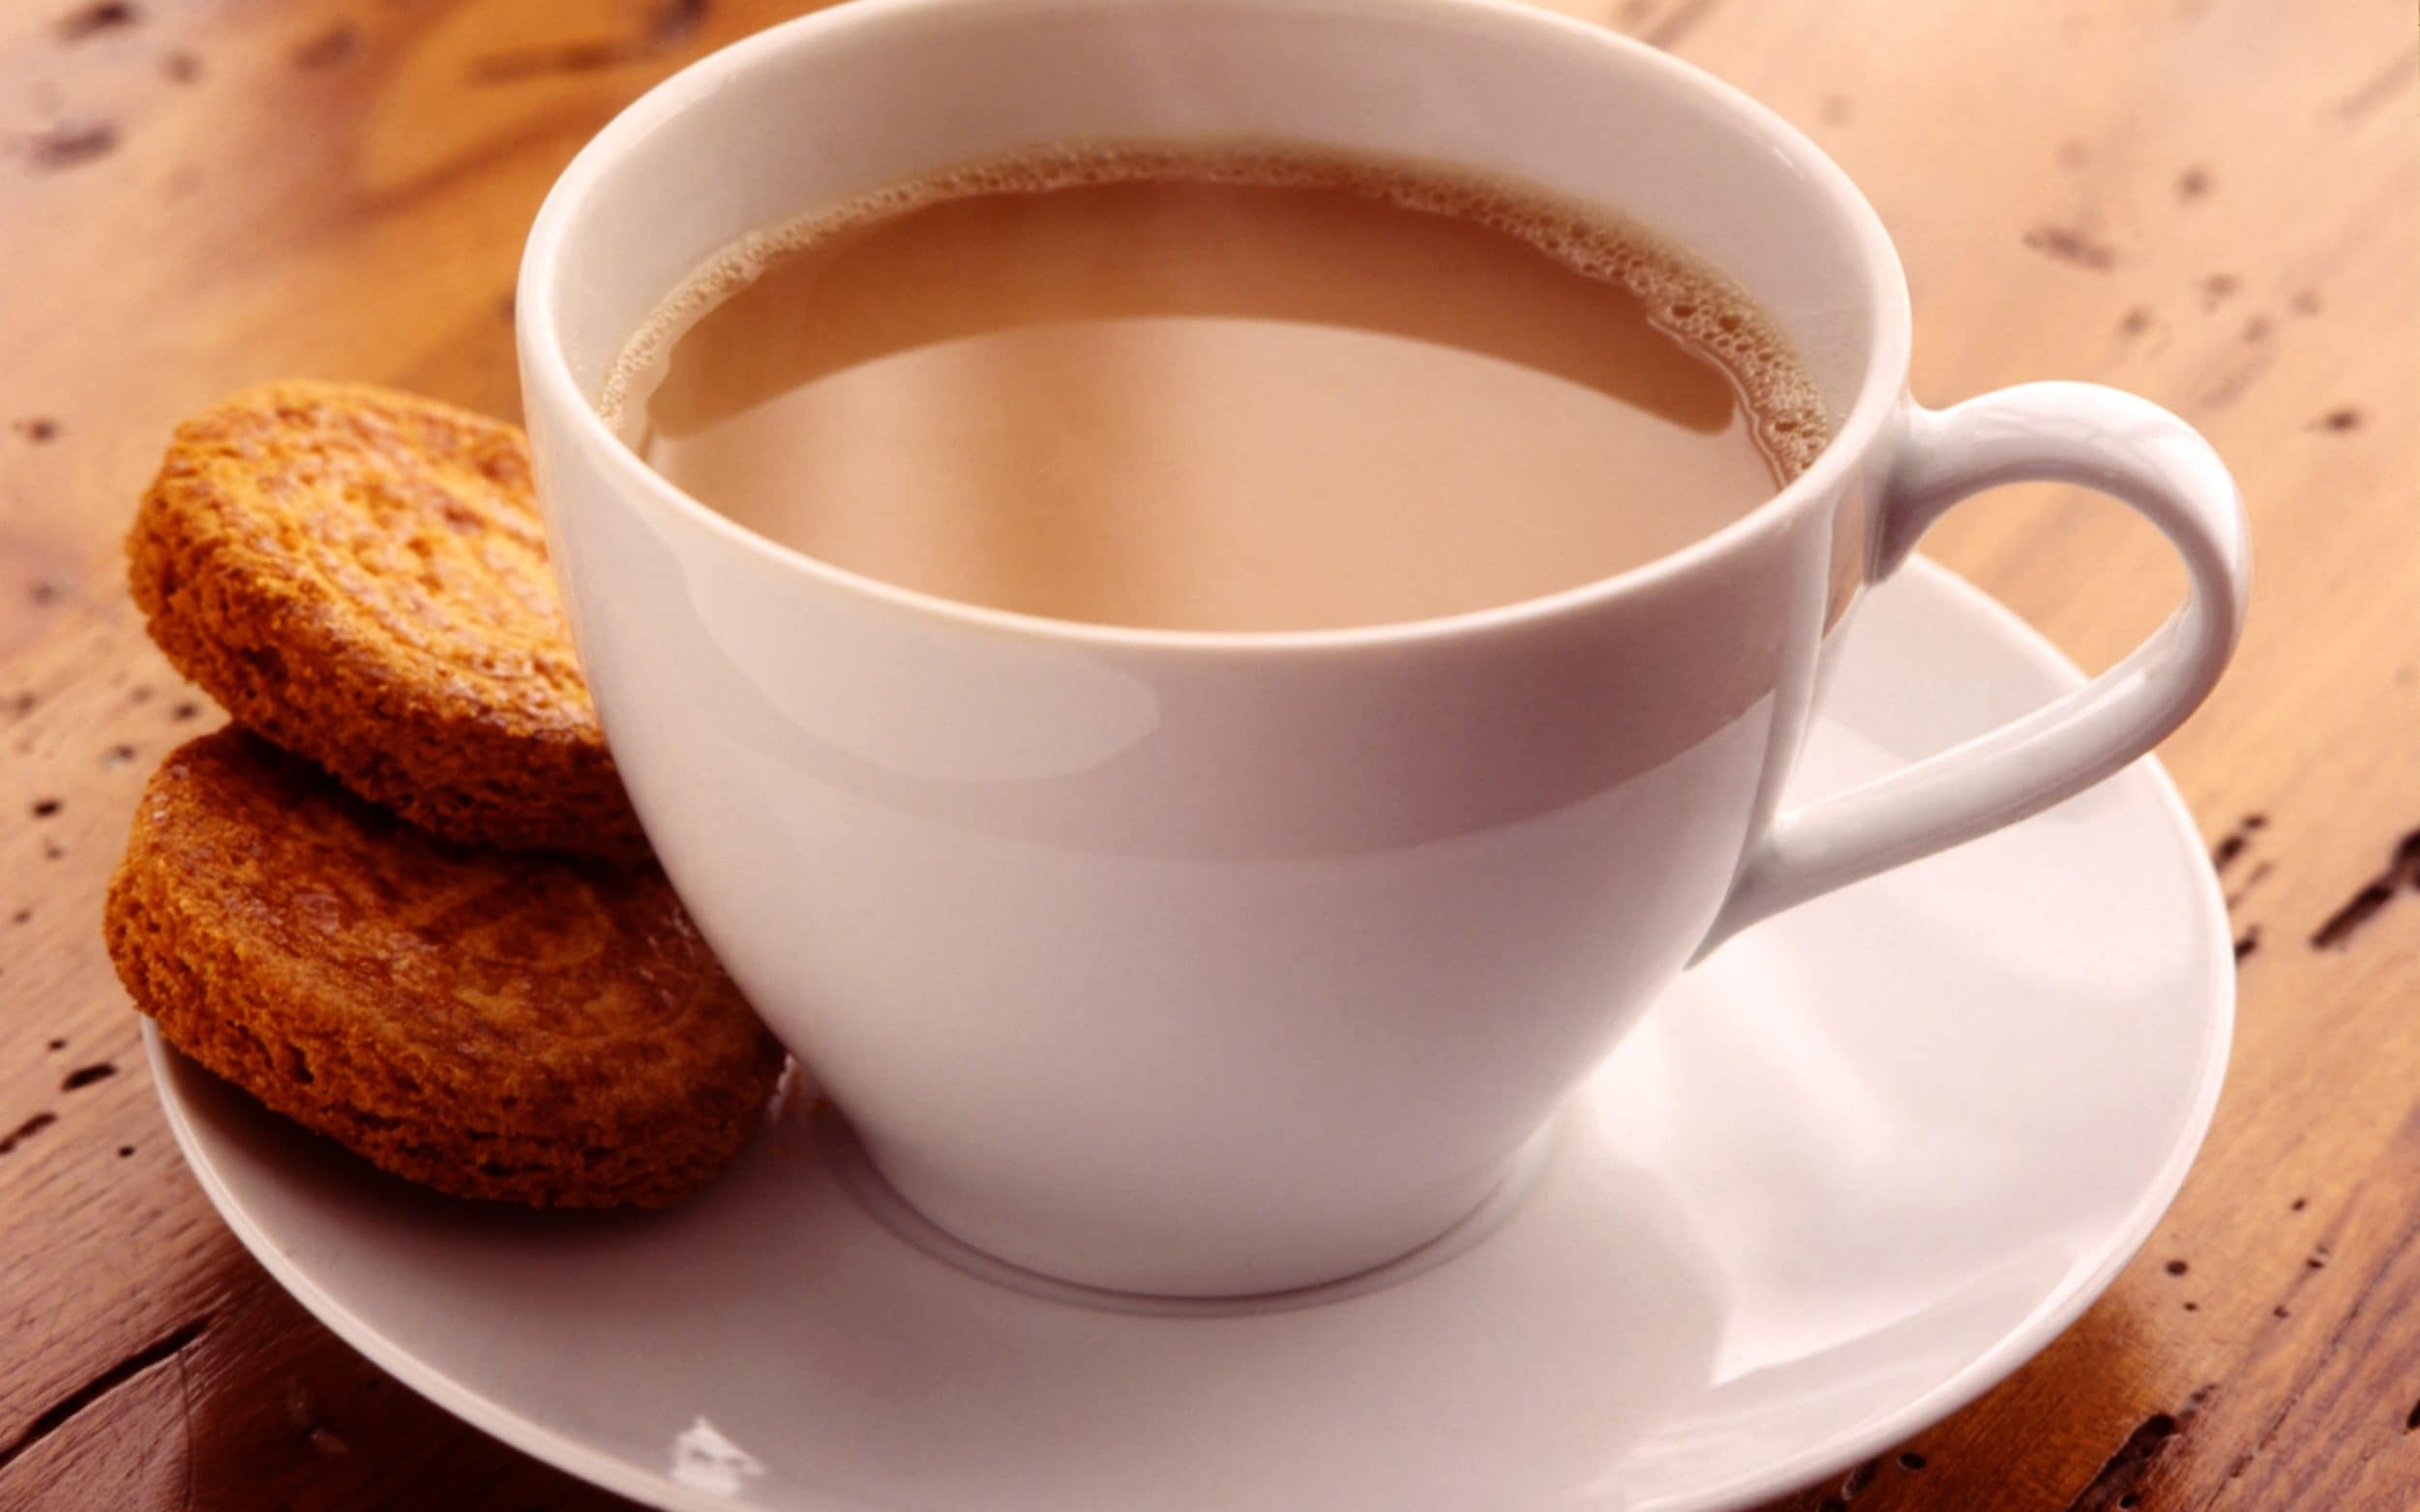 चाय बनेगा जहर क्या आप जानते है कि जरूरत  से ज्यादा चाय पीने से आपकी सेहत पर उसके नकारात्मक प्रभाव पड़ सकता है